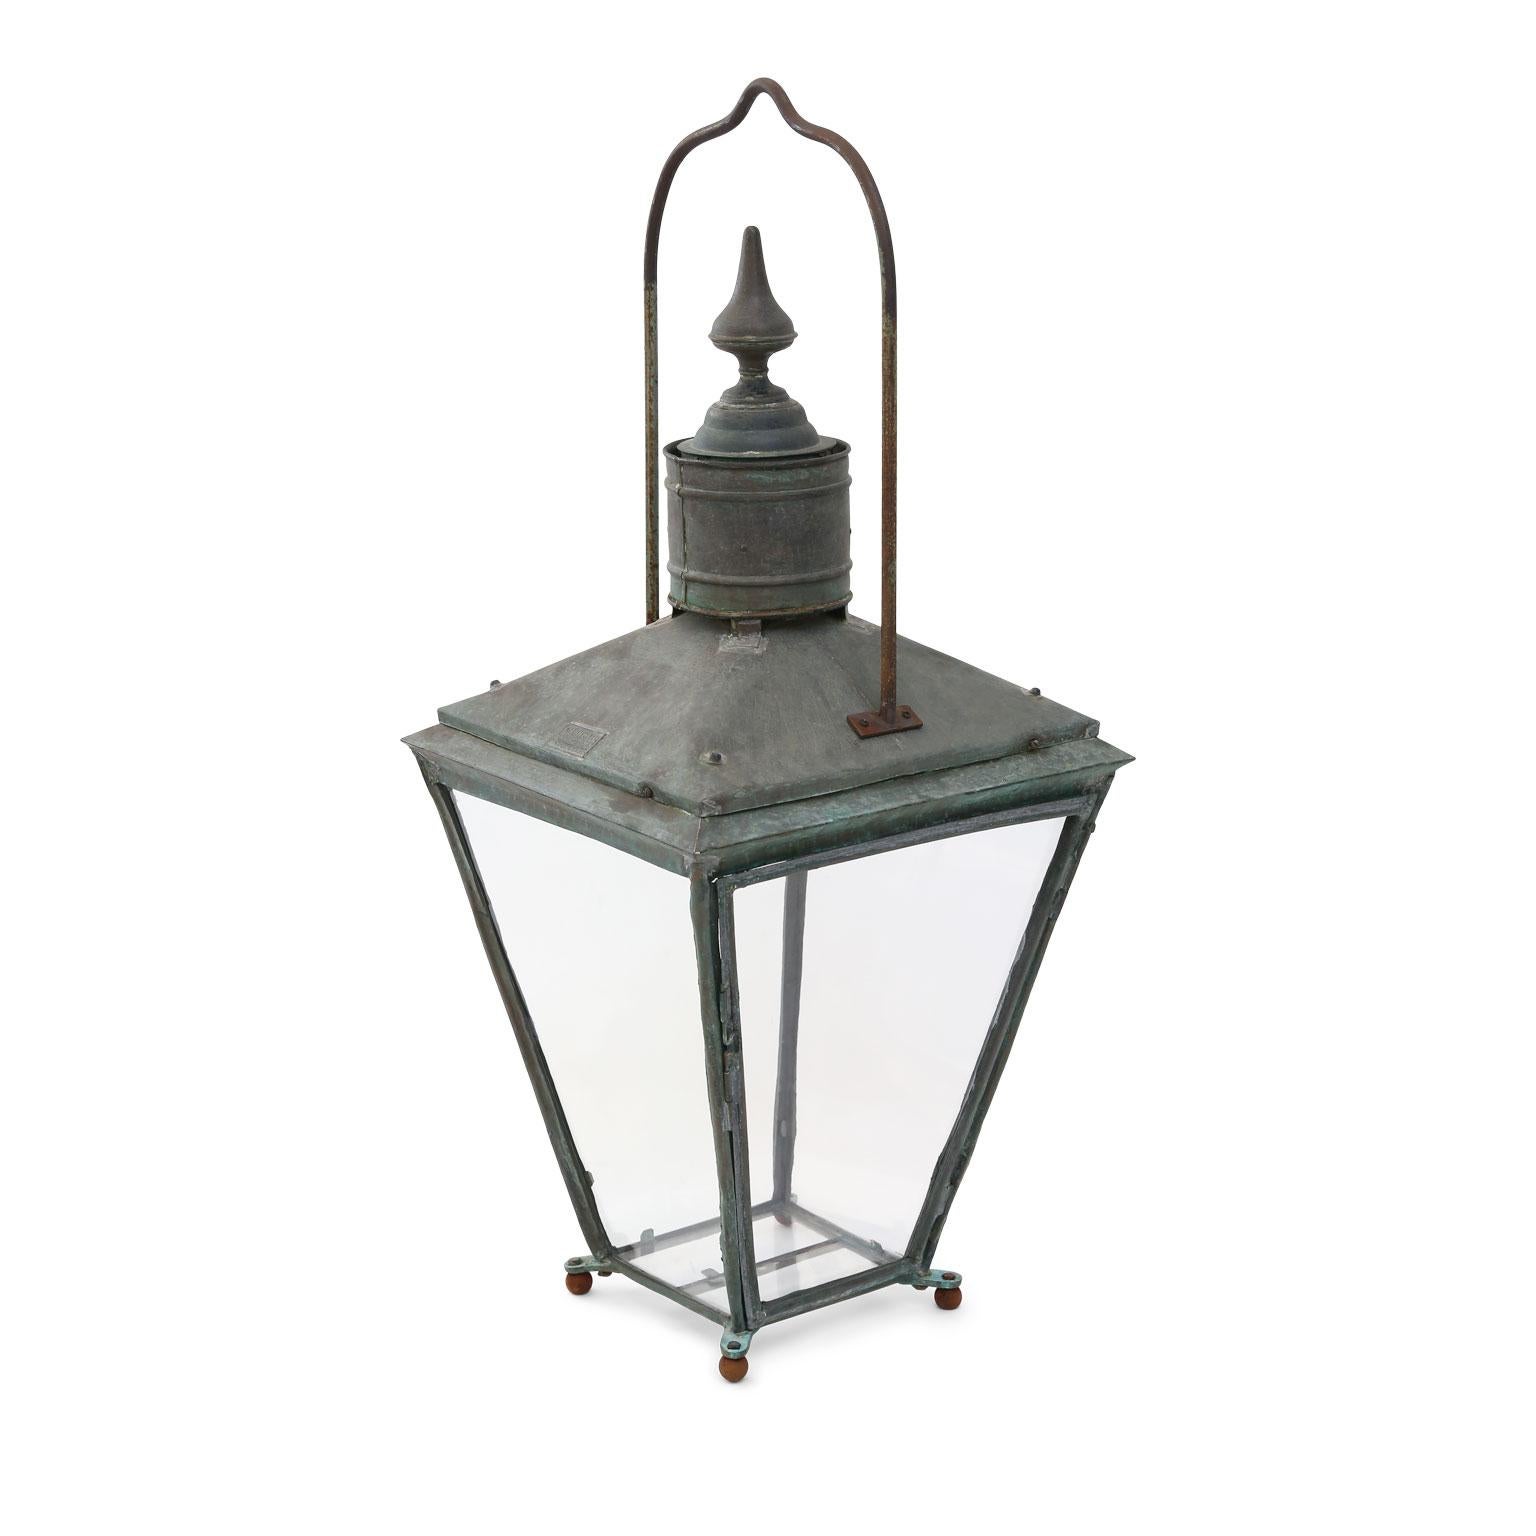 Large English verdigris patina copper lantern (circa 1875-1900) marked 